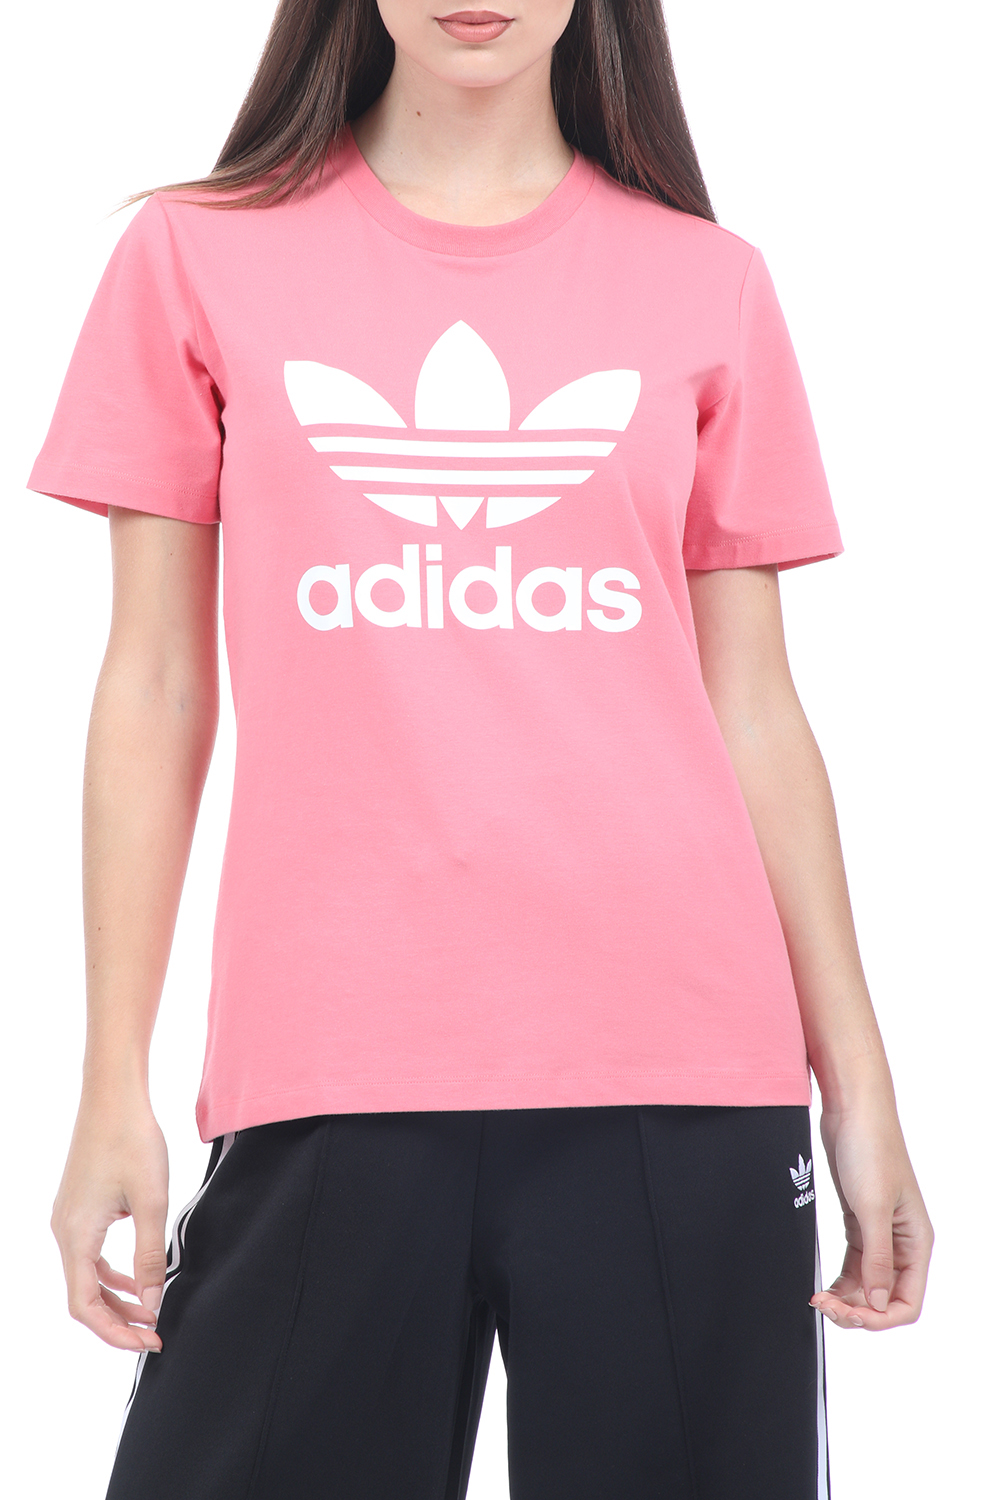 Γυναικεία/Ρούχα/Αθλητικά/T-shirt-Τοπ adidas Originals - Γυναικείο t-shirt adidas Originals TREFOIL ροζ